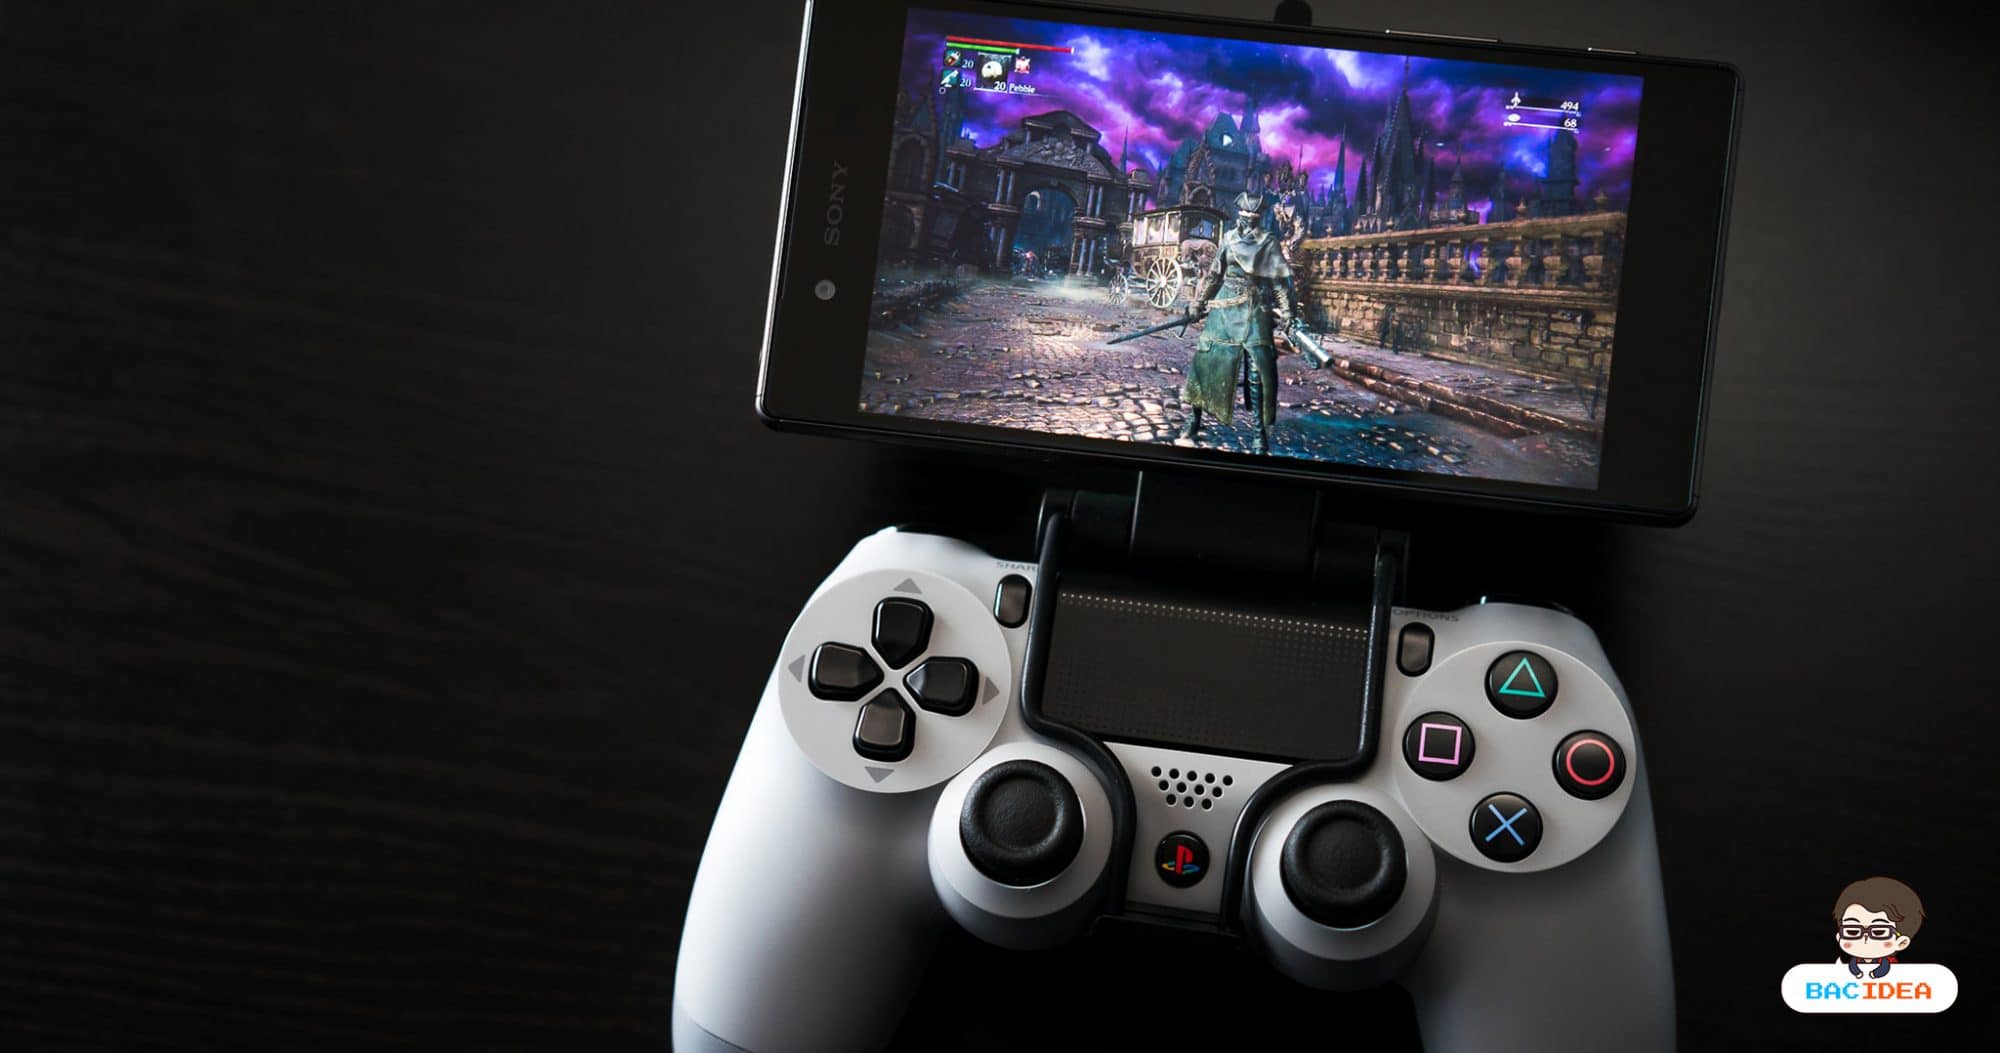 สิ้นยุค Exclusive แอป PS4 Remote Play สามารถใช้กับ Android รุ่นอื่นนอกจาก Sony Xperia ได้แล้ว 1